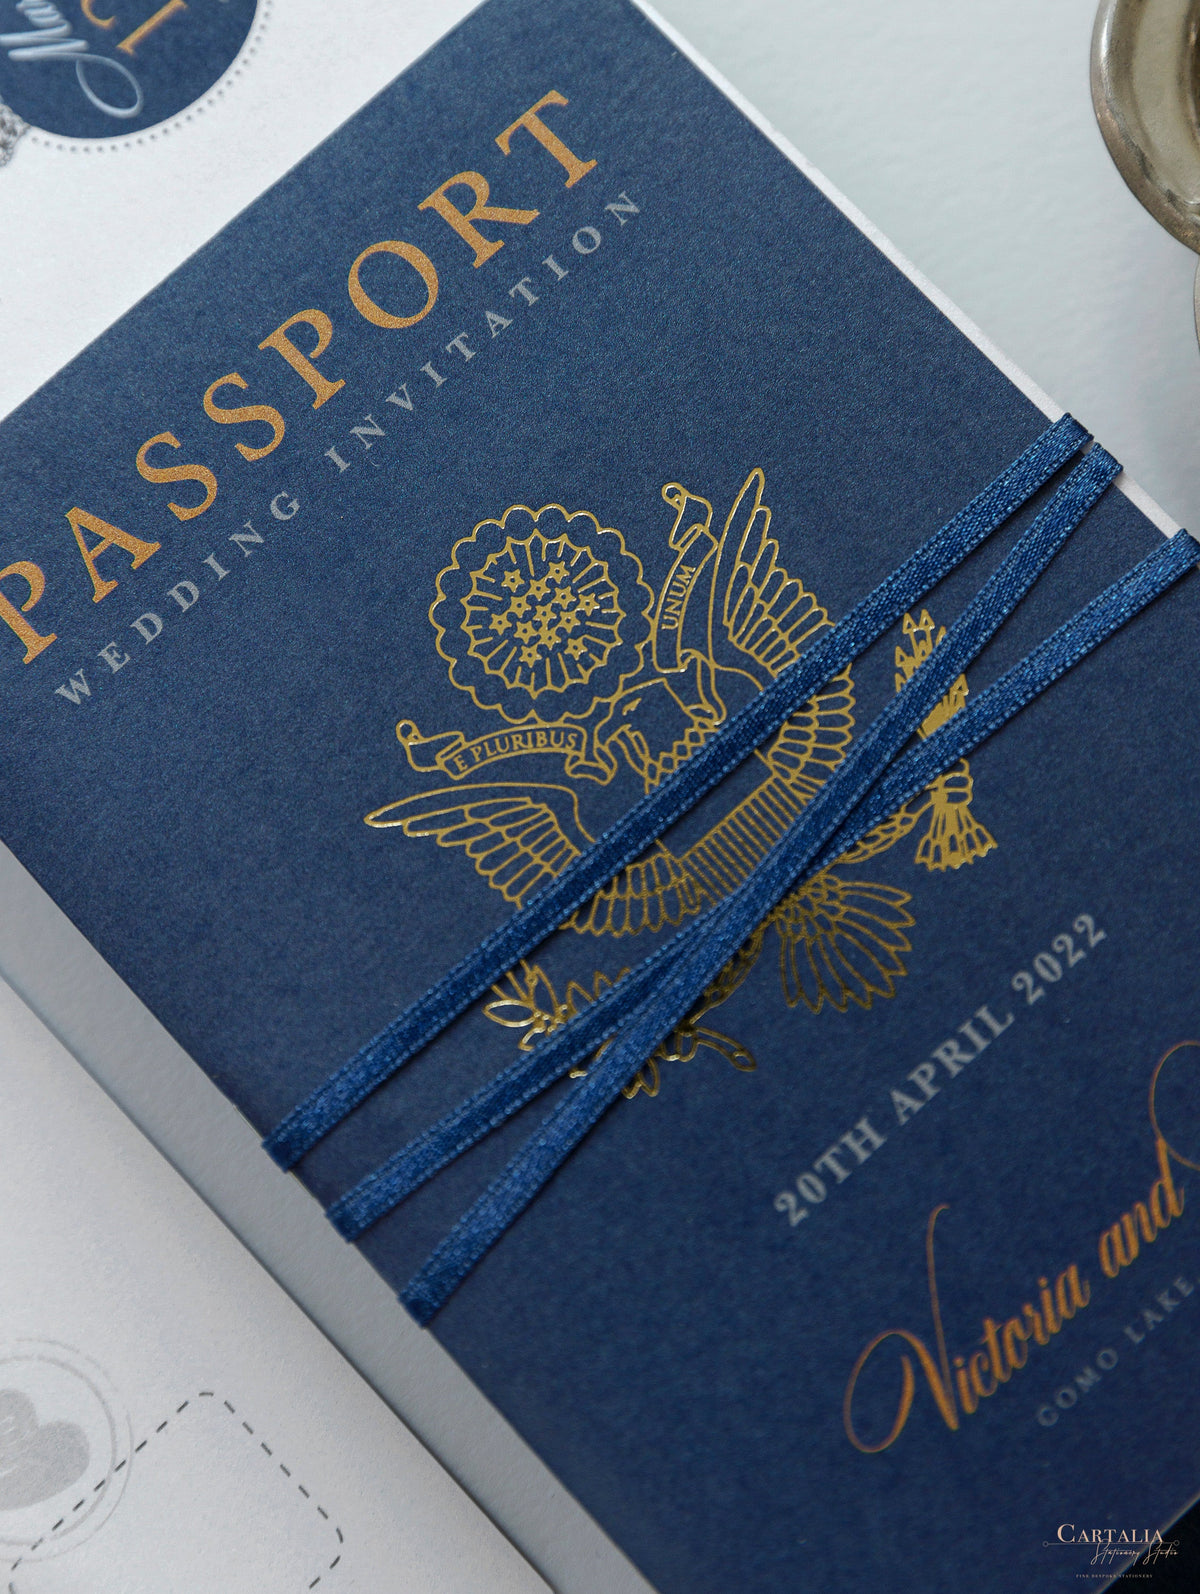 Invito a nozze blu marino con passaporto USA/americano con lamina scintillante + RSVP in stile carta d'imbarco